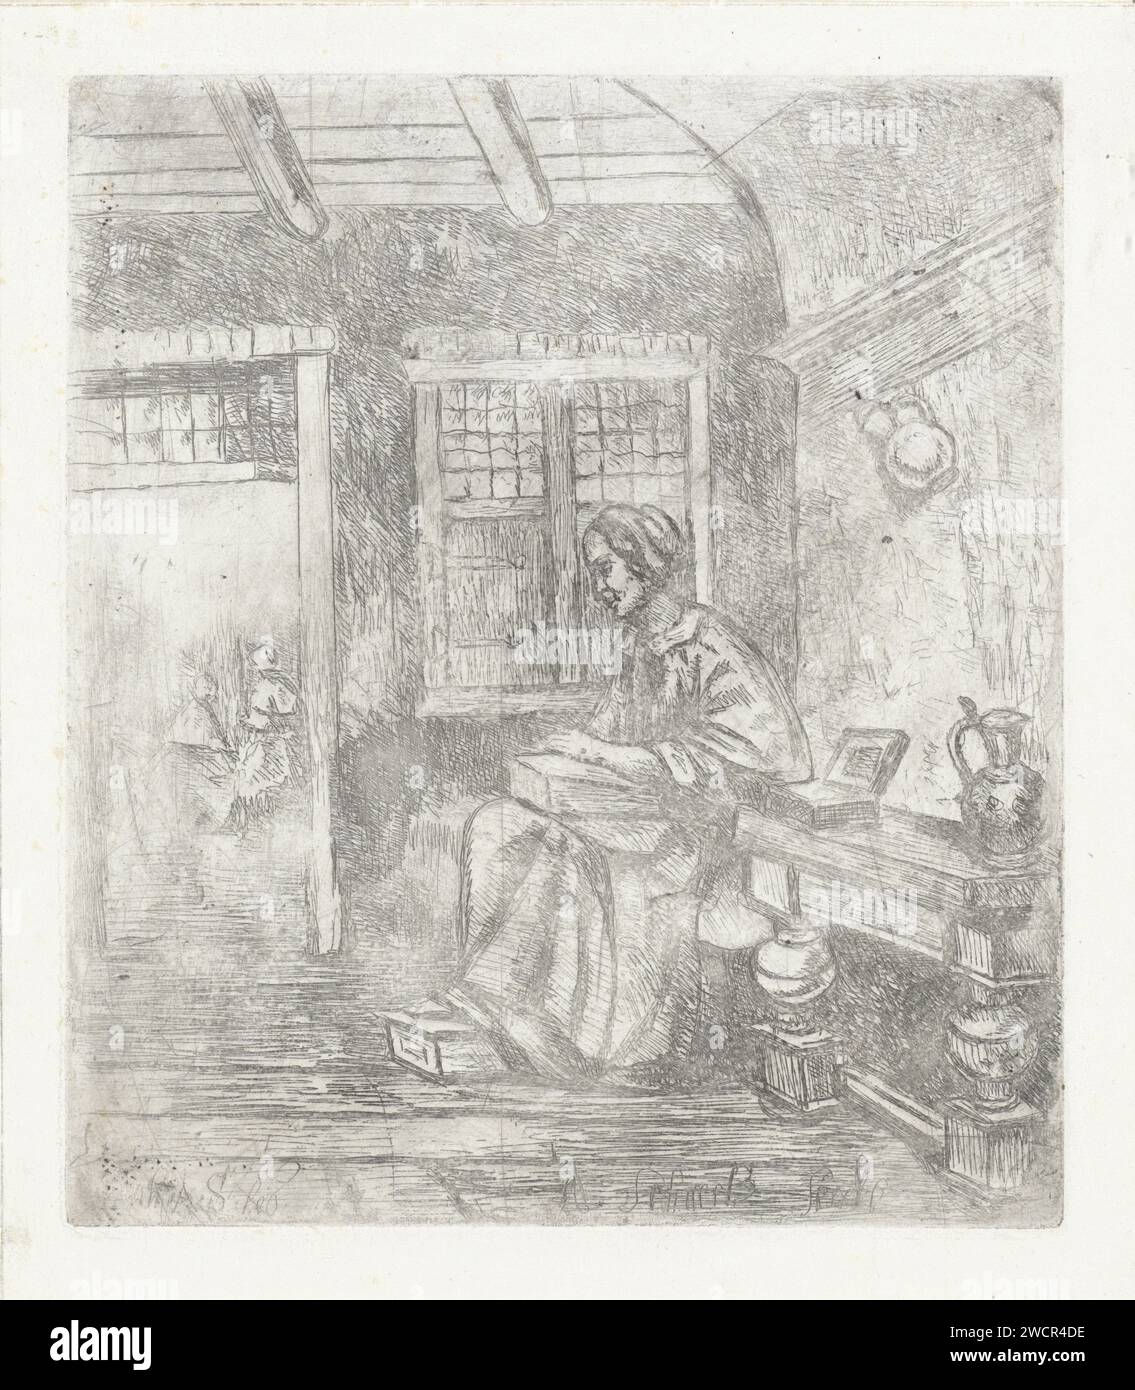 Lavoratore secondario, A. Schaub, dopo Johannes Adrianus Schultz, 1830 - 1863 stampa in un interno, una donna si sta occupando. Si siede con i piedi su uno stufato. Un tavolo accanto a lei. Figura seduta con incisione di carta - AA - figura umana femminile Foto Stock